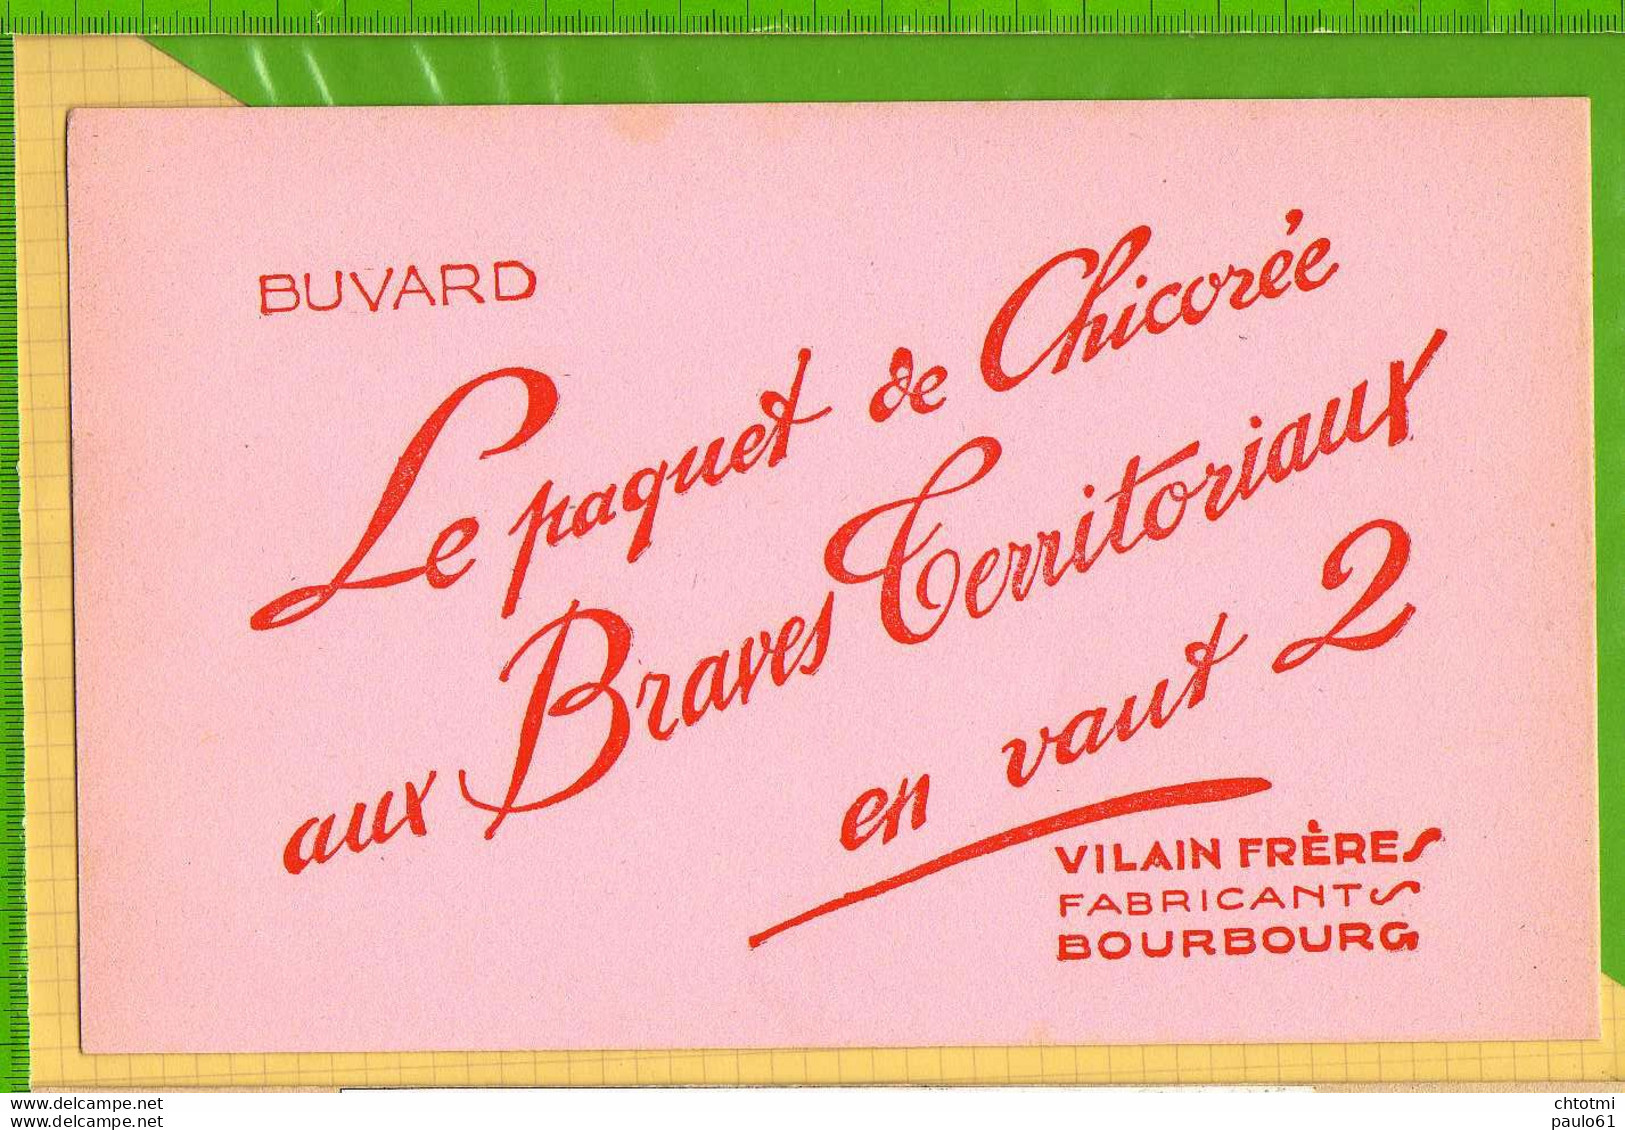 Buvard & Blotting Paper : Le Paquet De Chicorée AUX BRAVES TERRITORIAUX  En Vaut 2 VILAINS FRERES  BOURBOURG - Kaffee & Tee